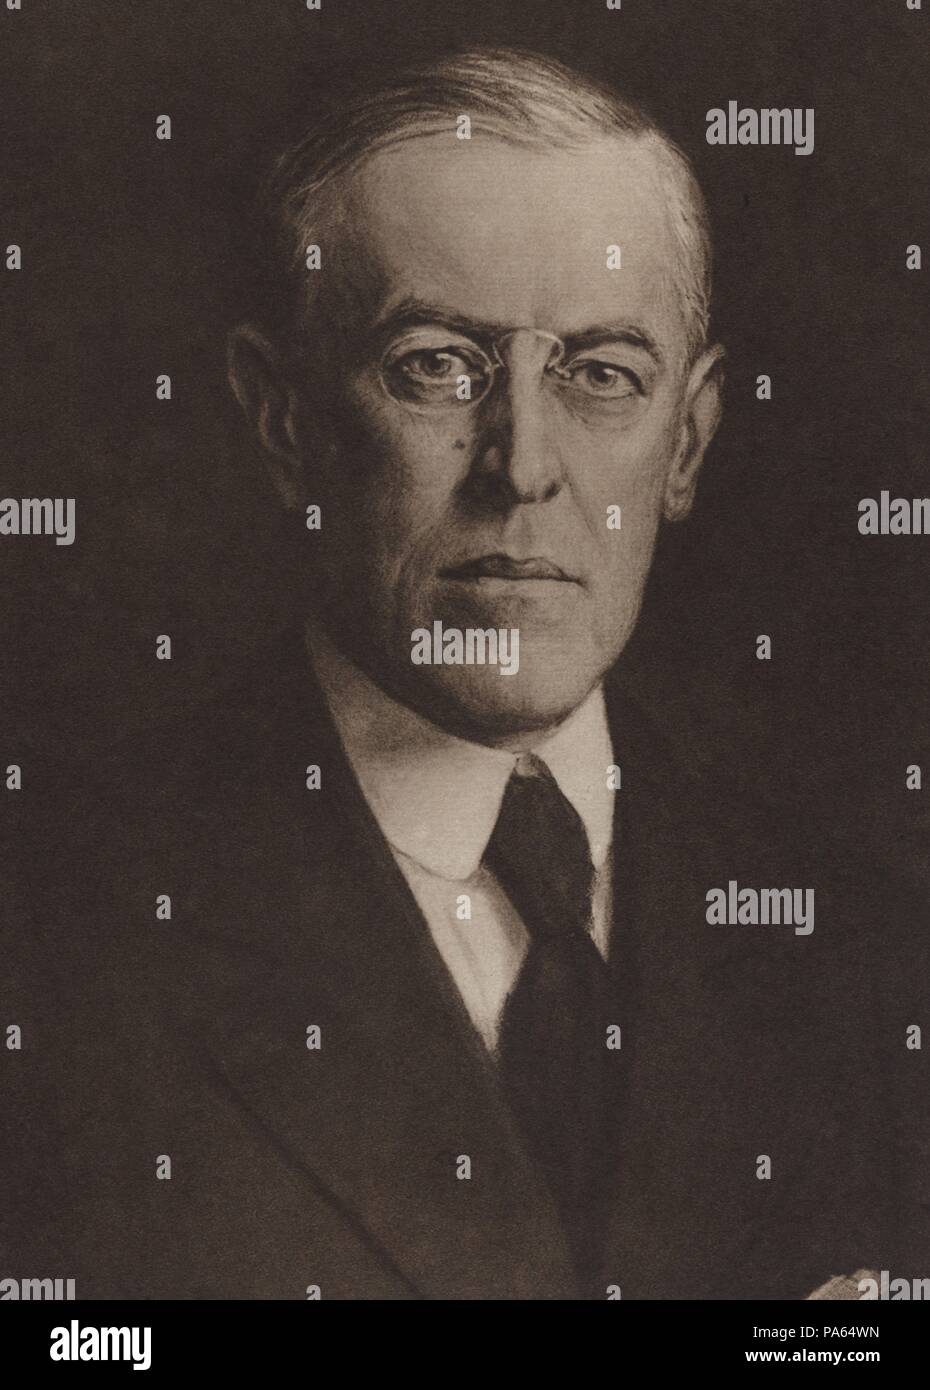 Primera guerra mundial (1914-1918). Wilson, Thomas Woodrow (1856-1924), político norteamericano, presidente de los Estados Unidos. Grabado de 1916. Stock Photo